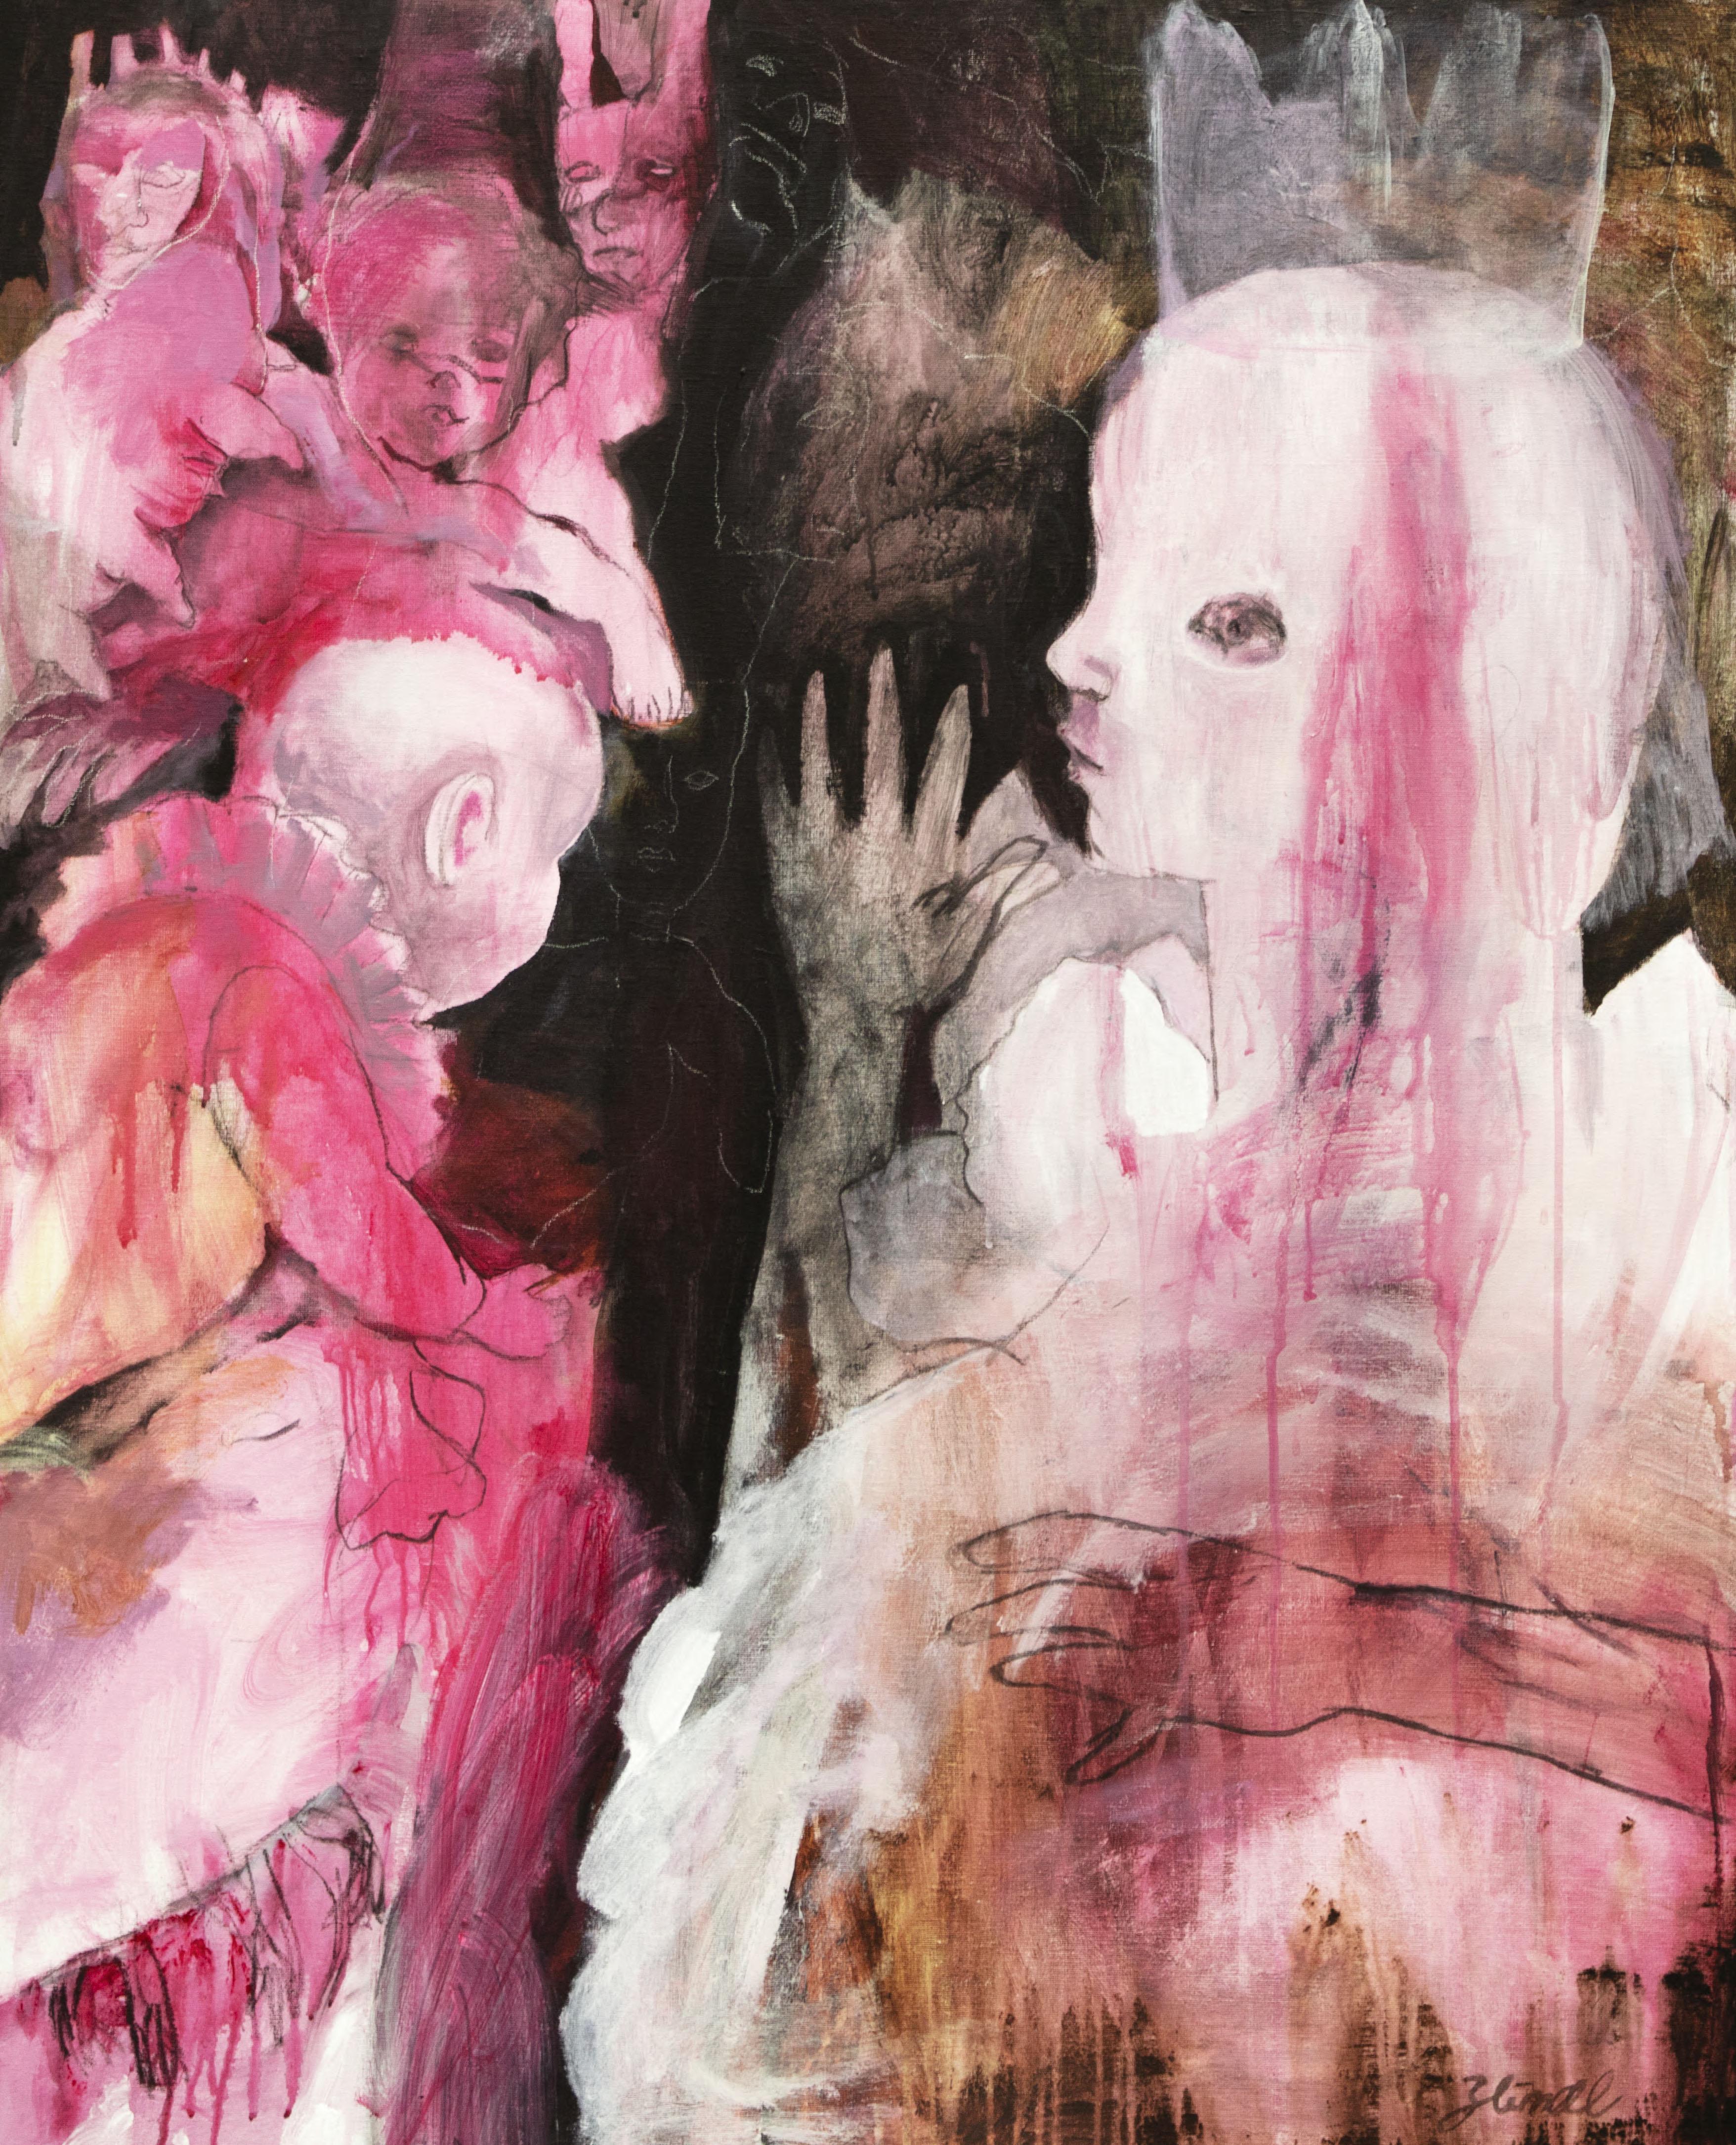 Acrylfarbe auf Leinwand
Handsigniert unten rechts vom Künstler

DAS IMAGINÄRE LAND VON ZAHRA ZEINALI

"Im Laufe der Zeit entwickelt Zahra Zeinali ihr Universum, das sich langsam aus dem Unbewussten heraus entwickelt, ein riesiges unterirdisches